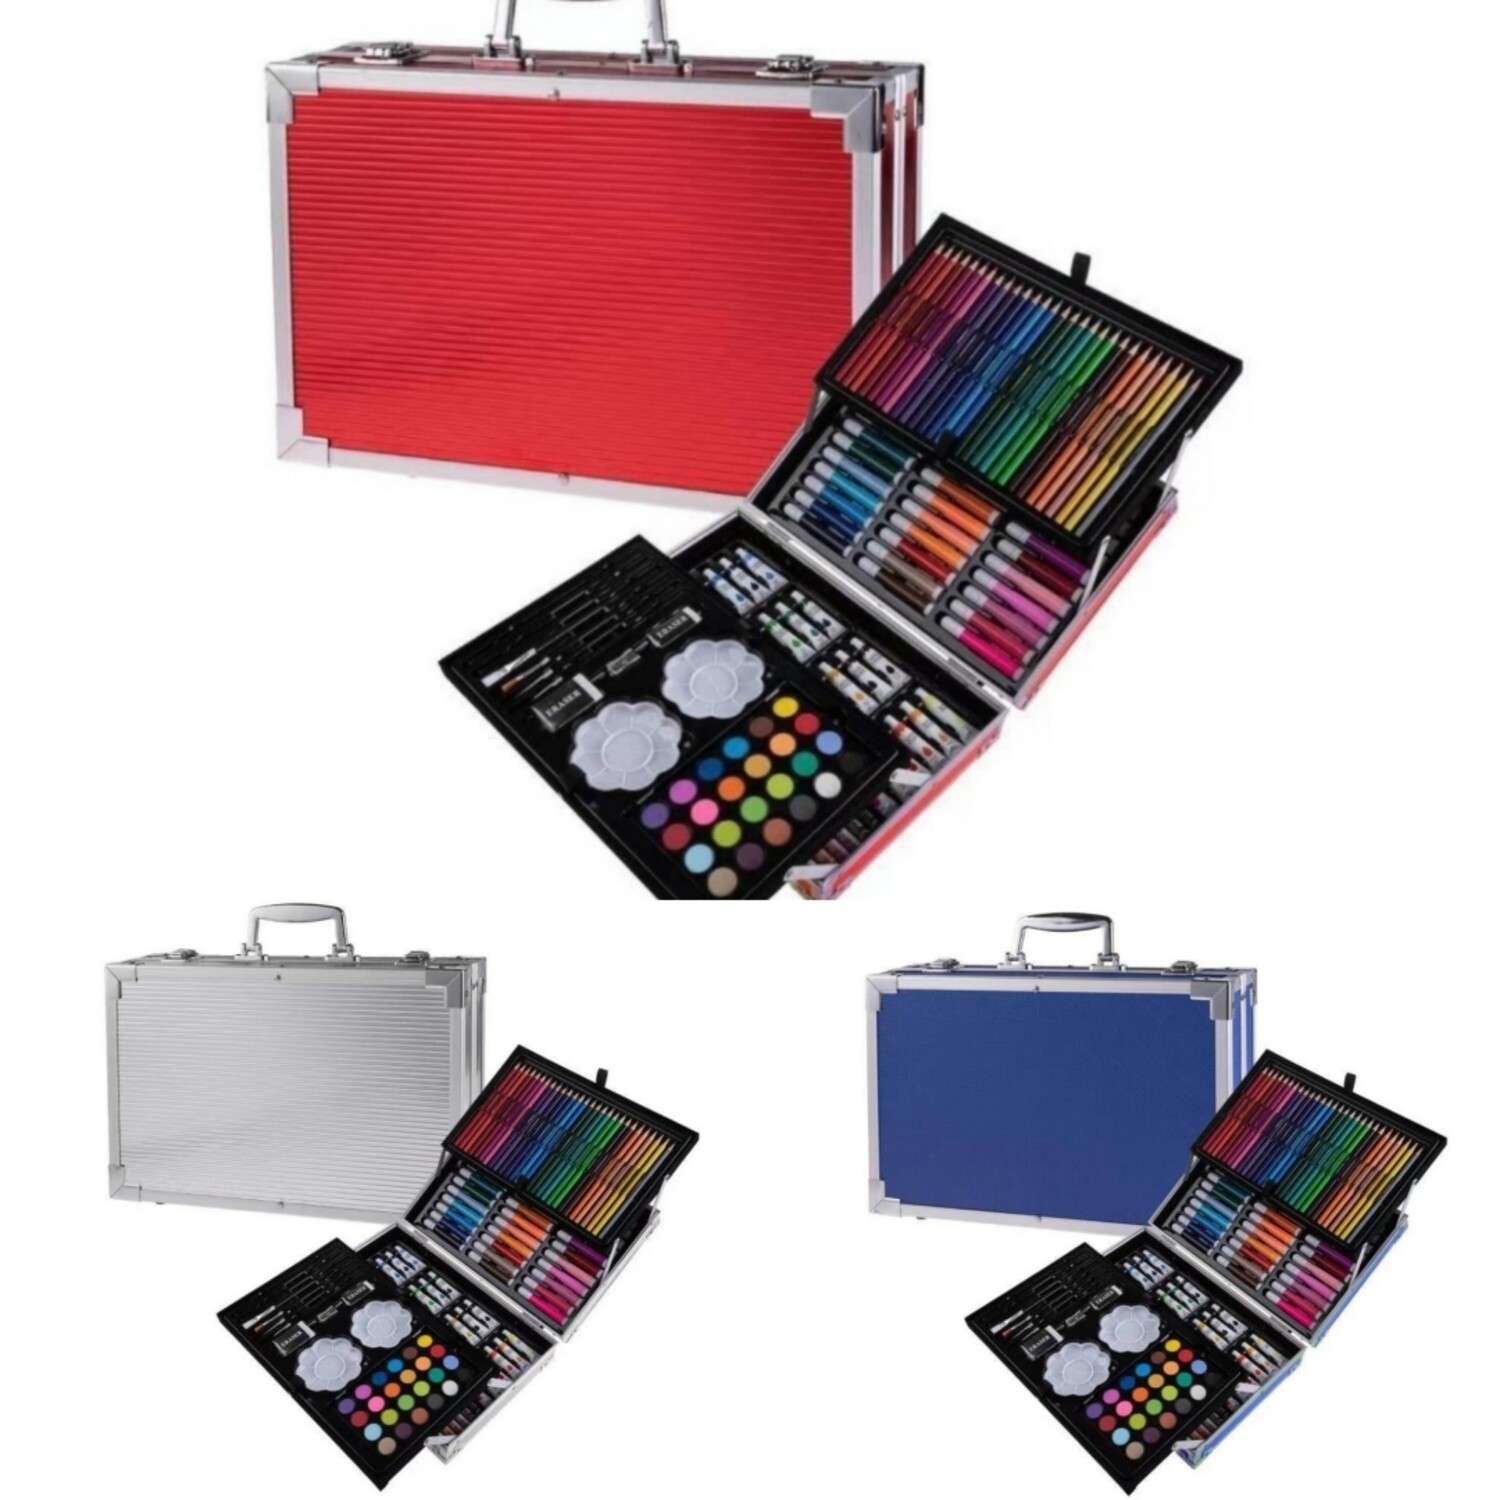 Художественный набор чемоданчик для рисования, в металлическом кейсе 145 предметов, в ассортименте